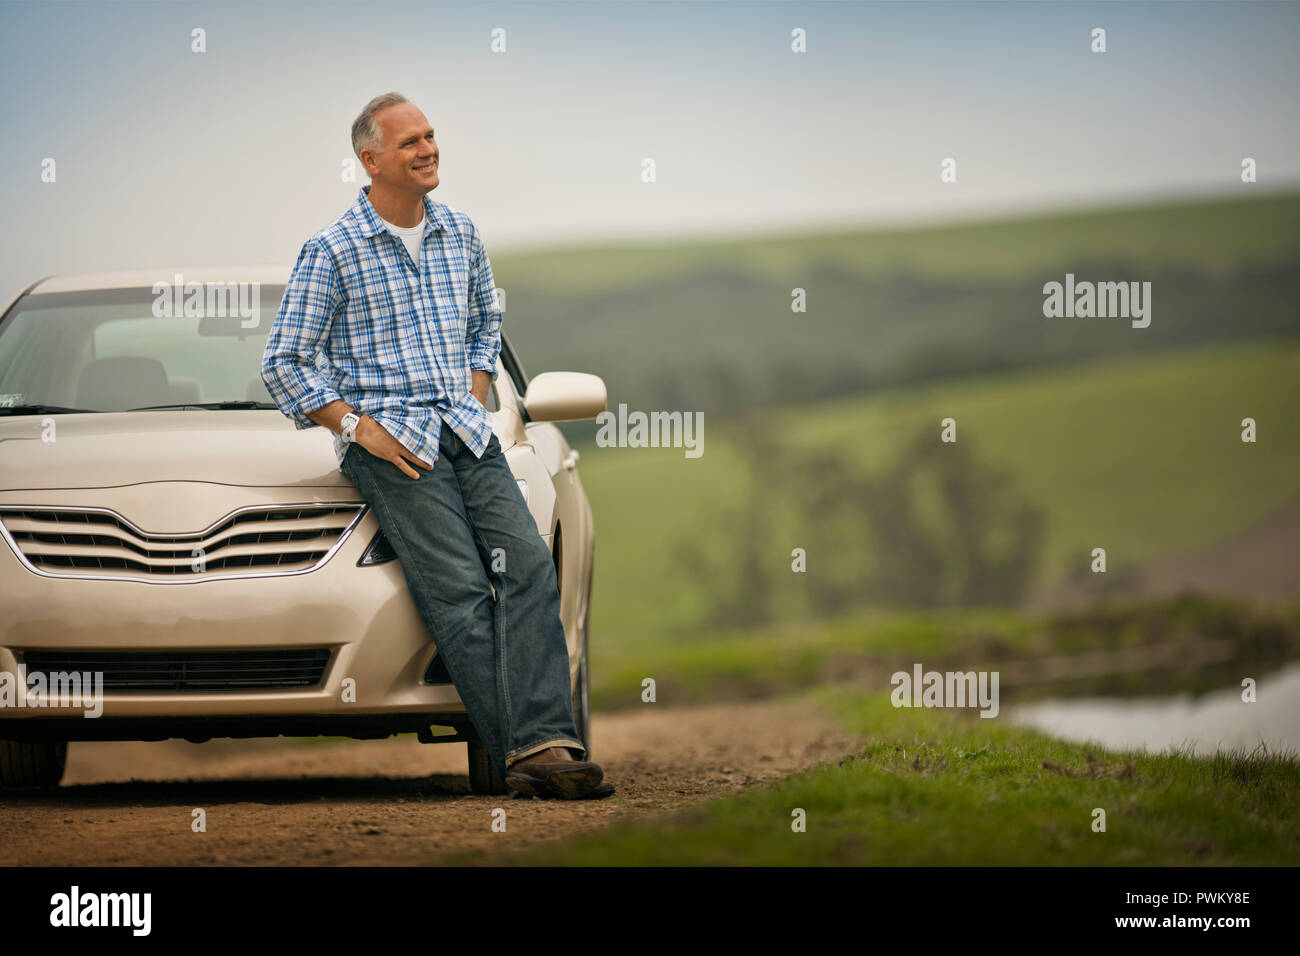 Lächelnd im mittleren Alter Mann lehnte sich auf der Motorhaube seines Autos. Stockfoto